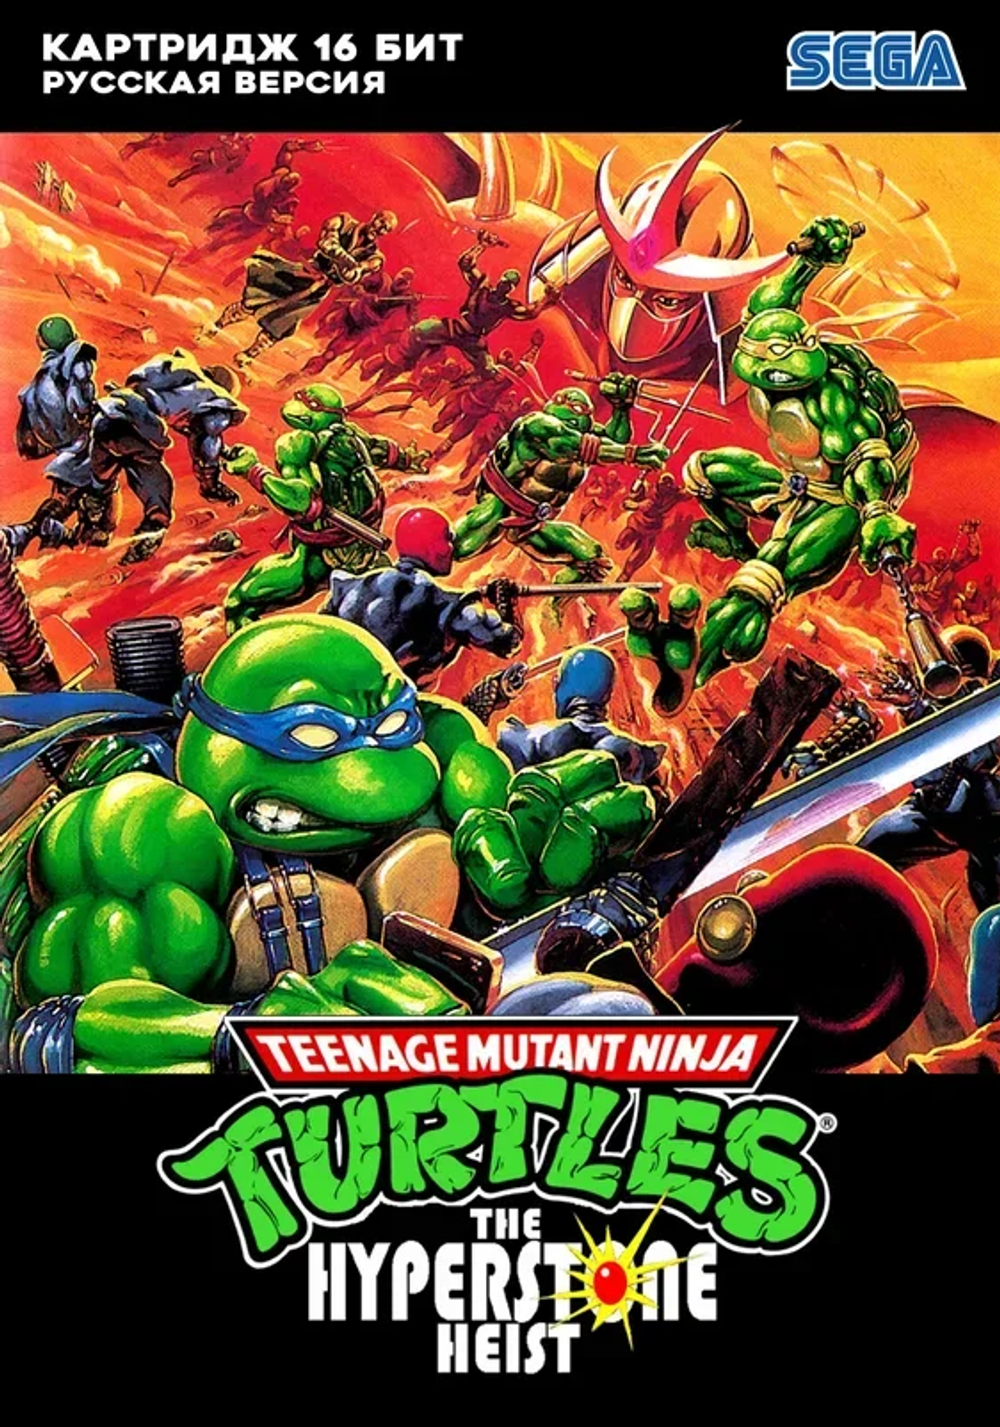 Tmnt sega. TMNT Hyperstone Heist Sega. Teenage Mutant Ninja Turtles the Hyperstone Heist. TMNT Hyperstone Heist Sega Dreamcast. Teenage Mutant Ninja Turtles the Hyperstone Heist Sega.